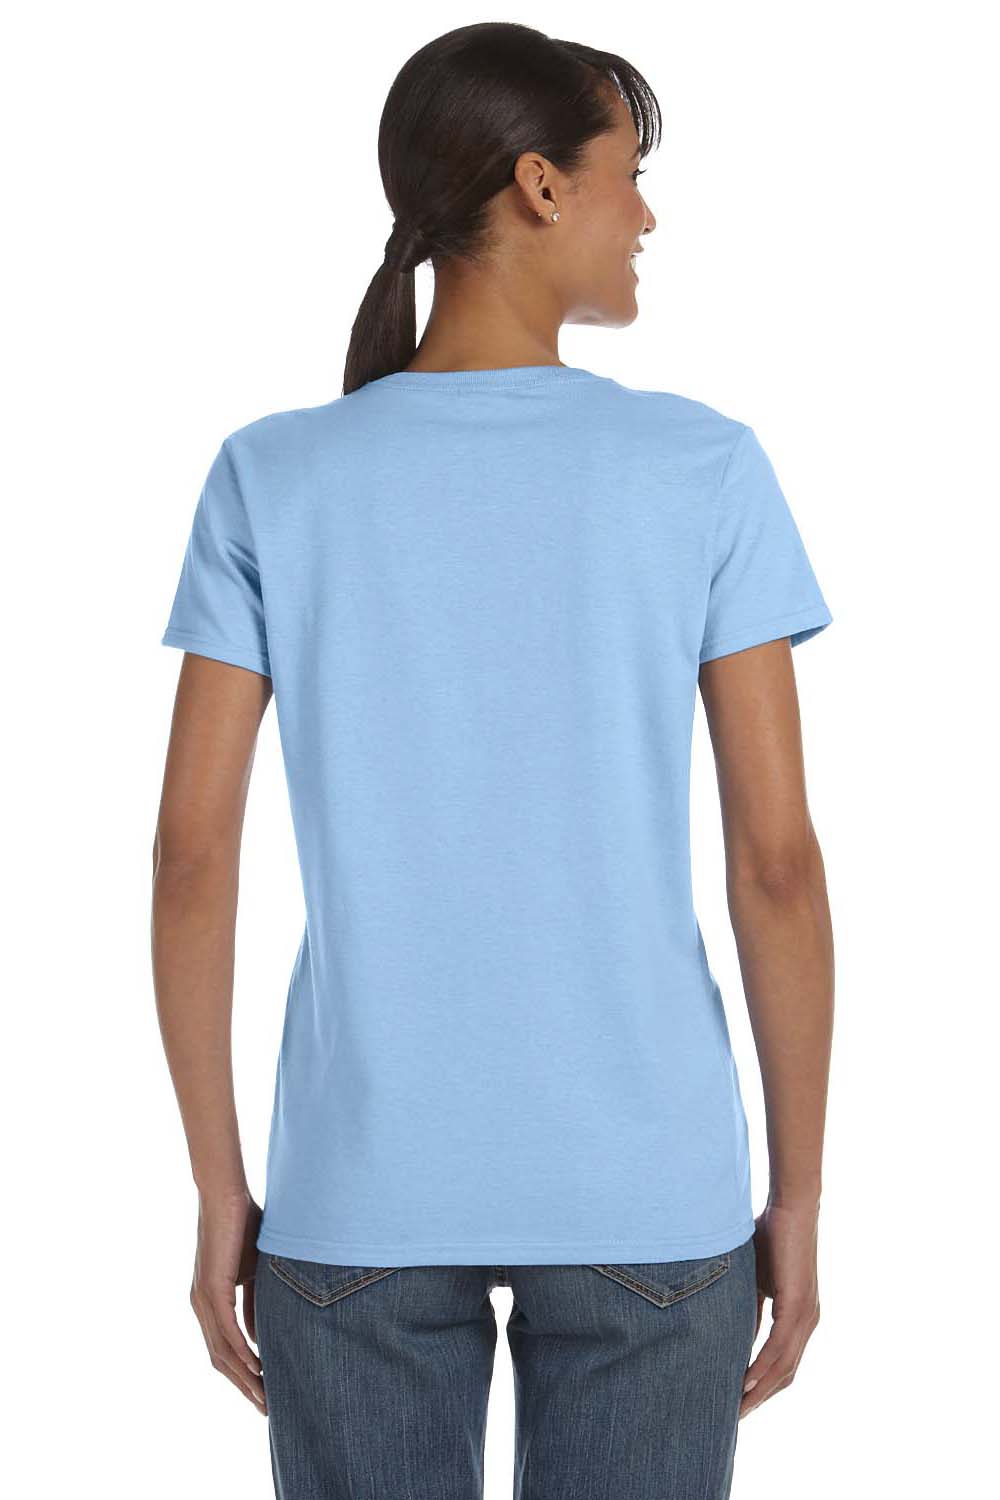 Gildan G500L Womens Short Sleeve Crewneck T-Shirt Light Blue Back